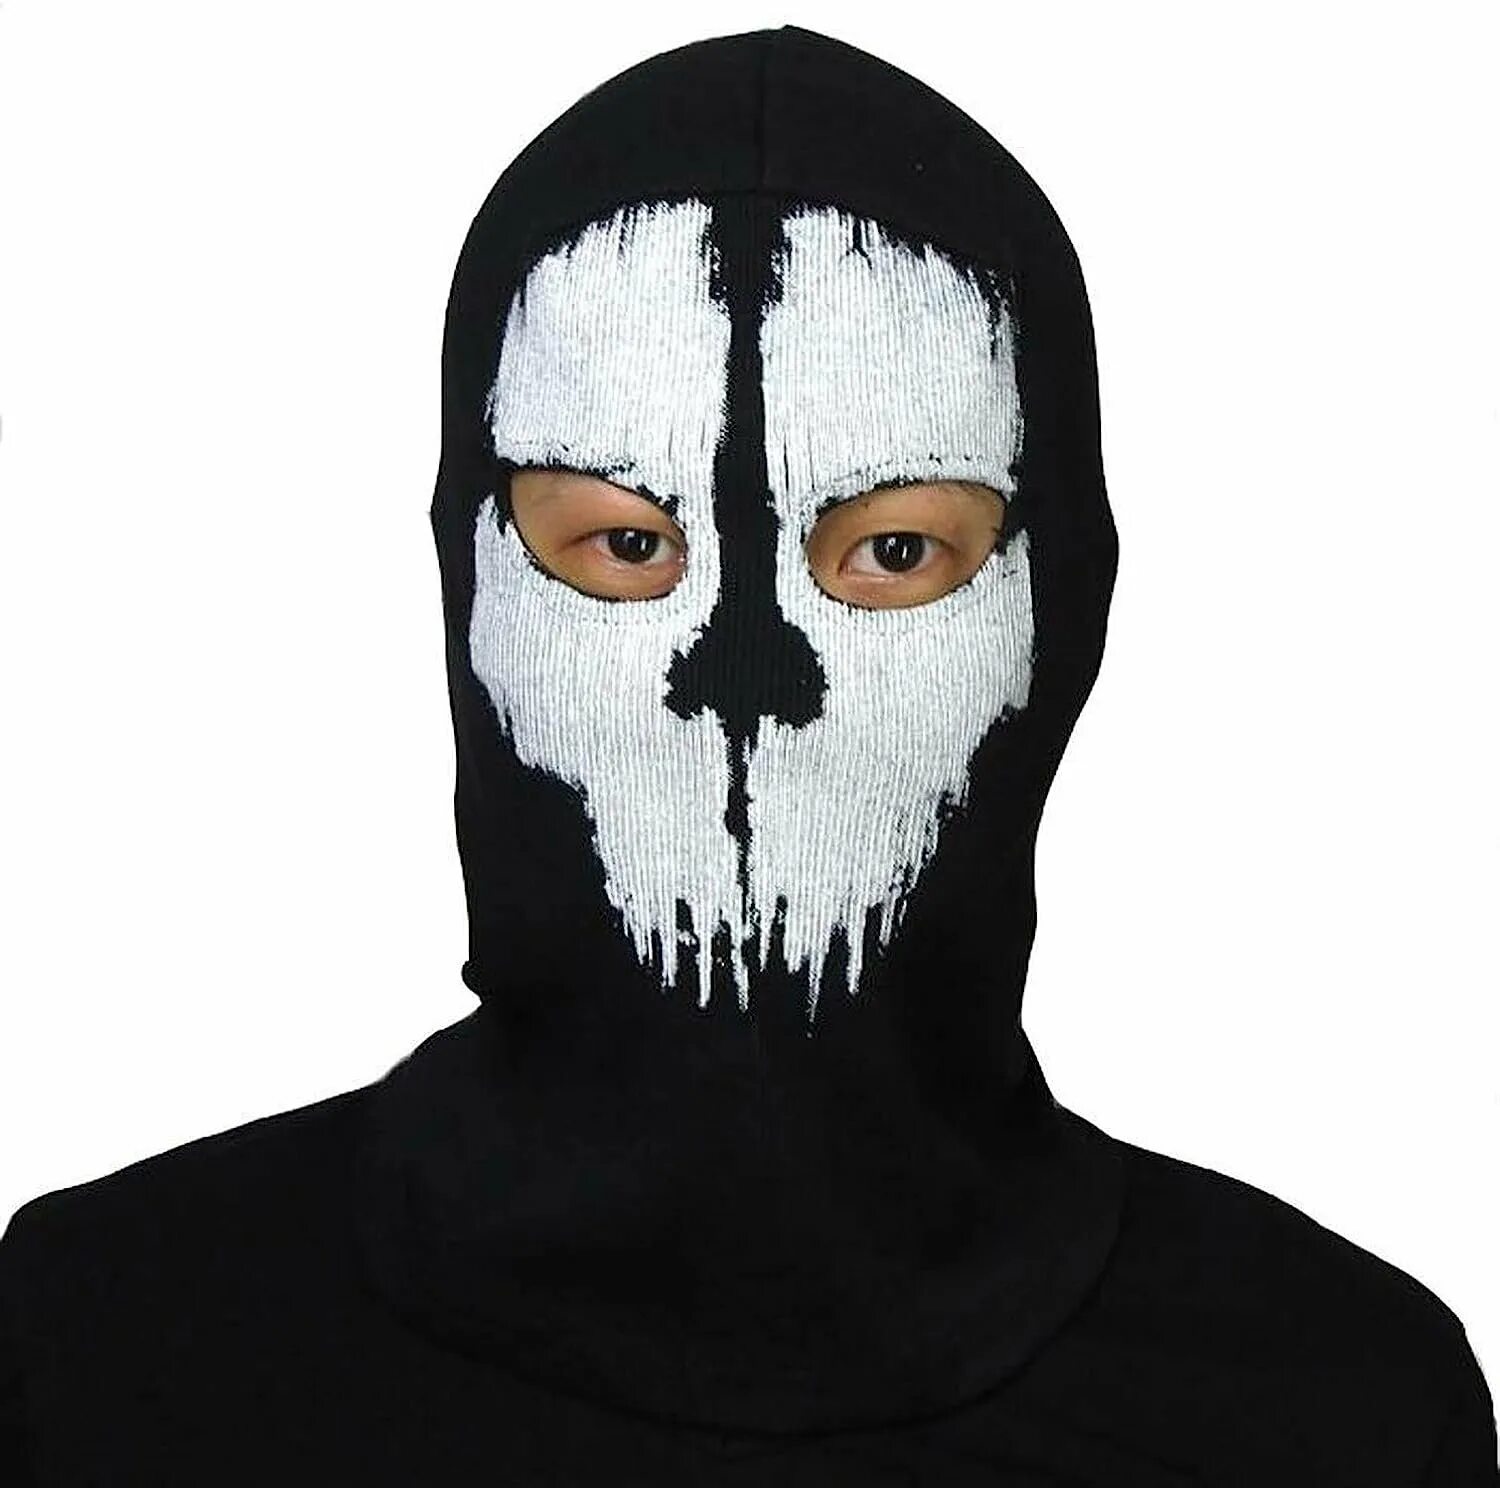 Купить маску гоуста. Балаклава Ghost Mask. Балаклава Ghost Call of Duty. Гоуст маска Балаклава.